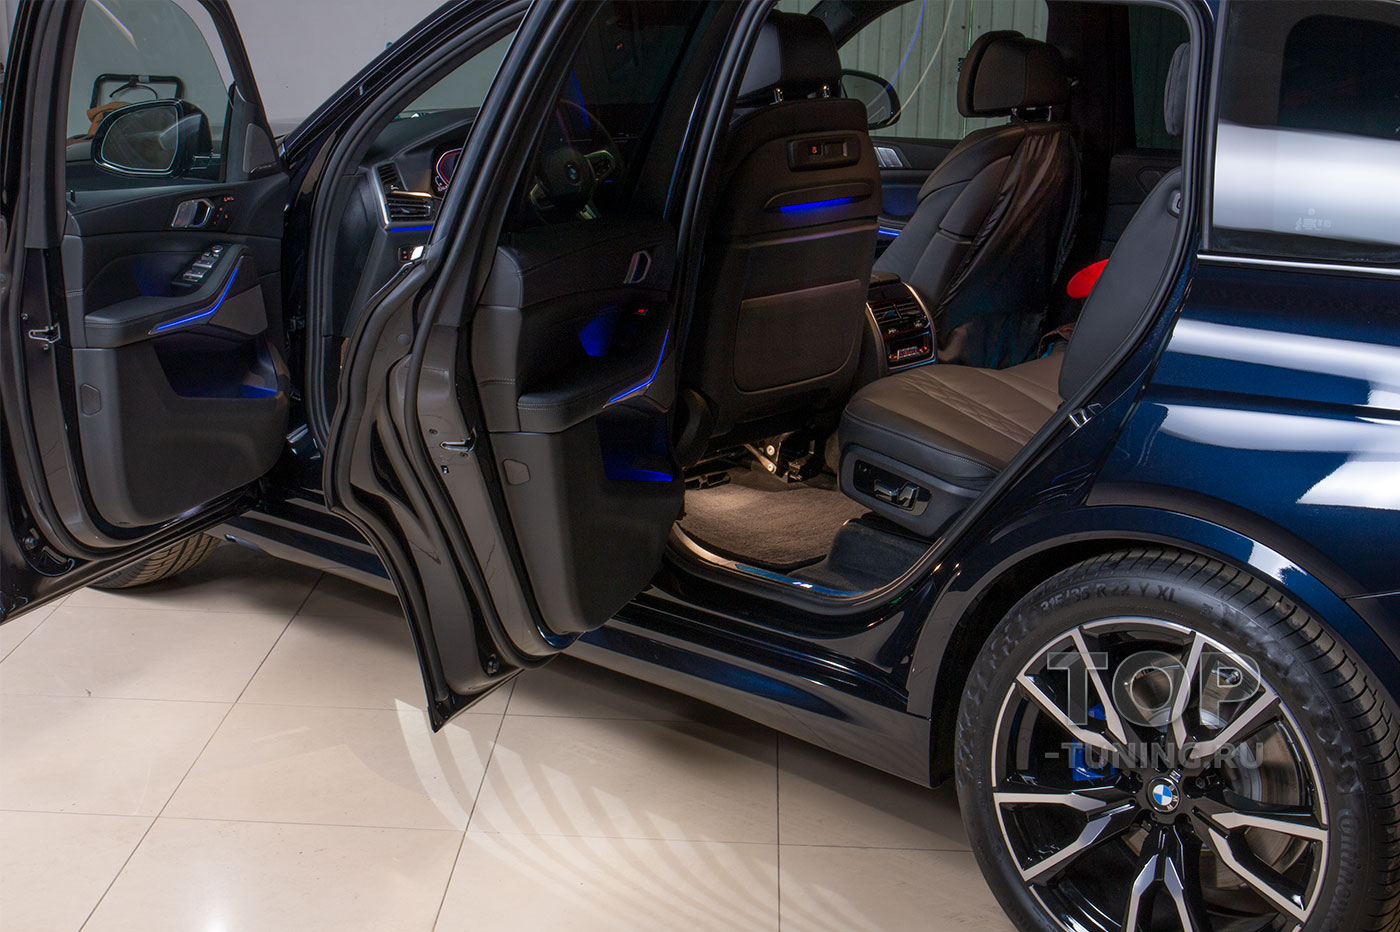 Максимальный уровень защиты BMW X7 G07. Замер толщины ЛКП на автомобилях G-серии